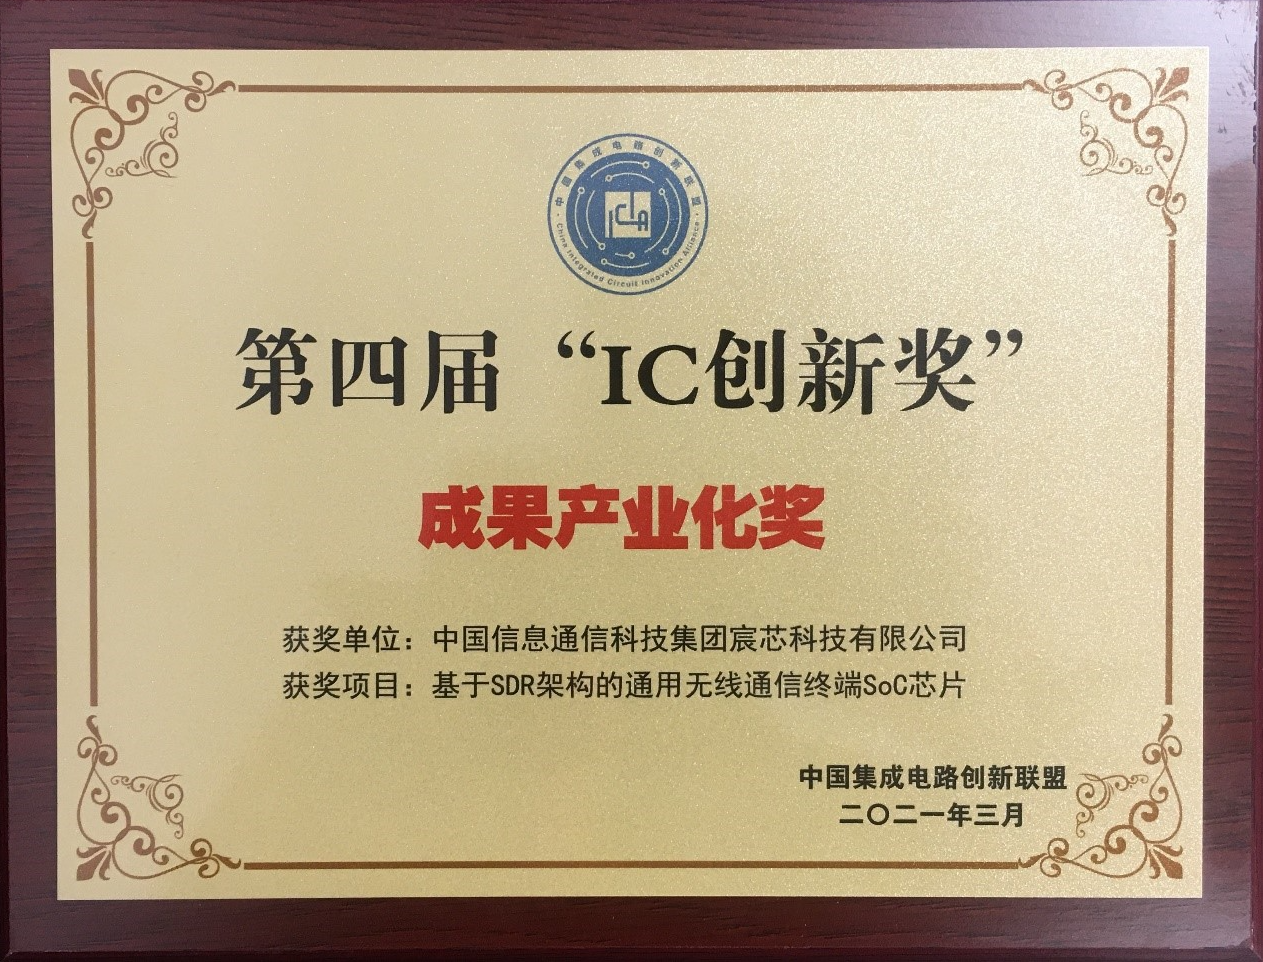 荣获中国集成电路创新联盟“IC创新奖-成果产业化奖”